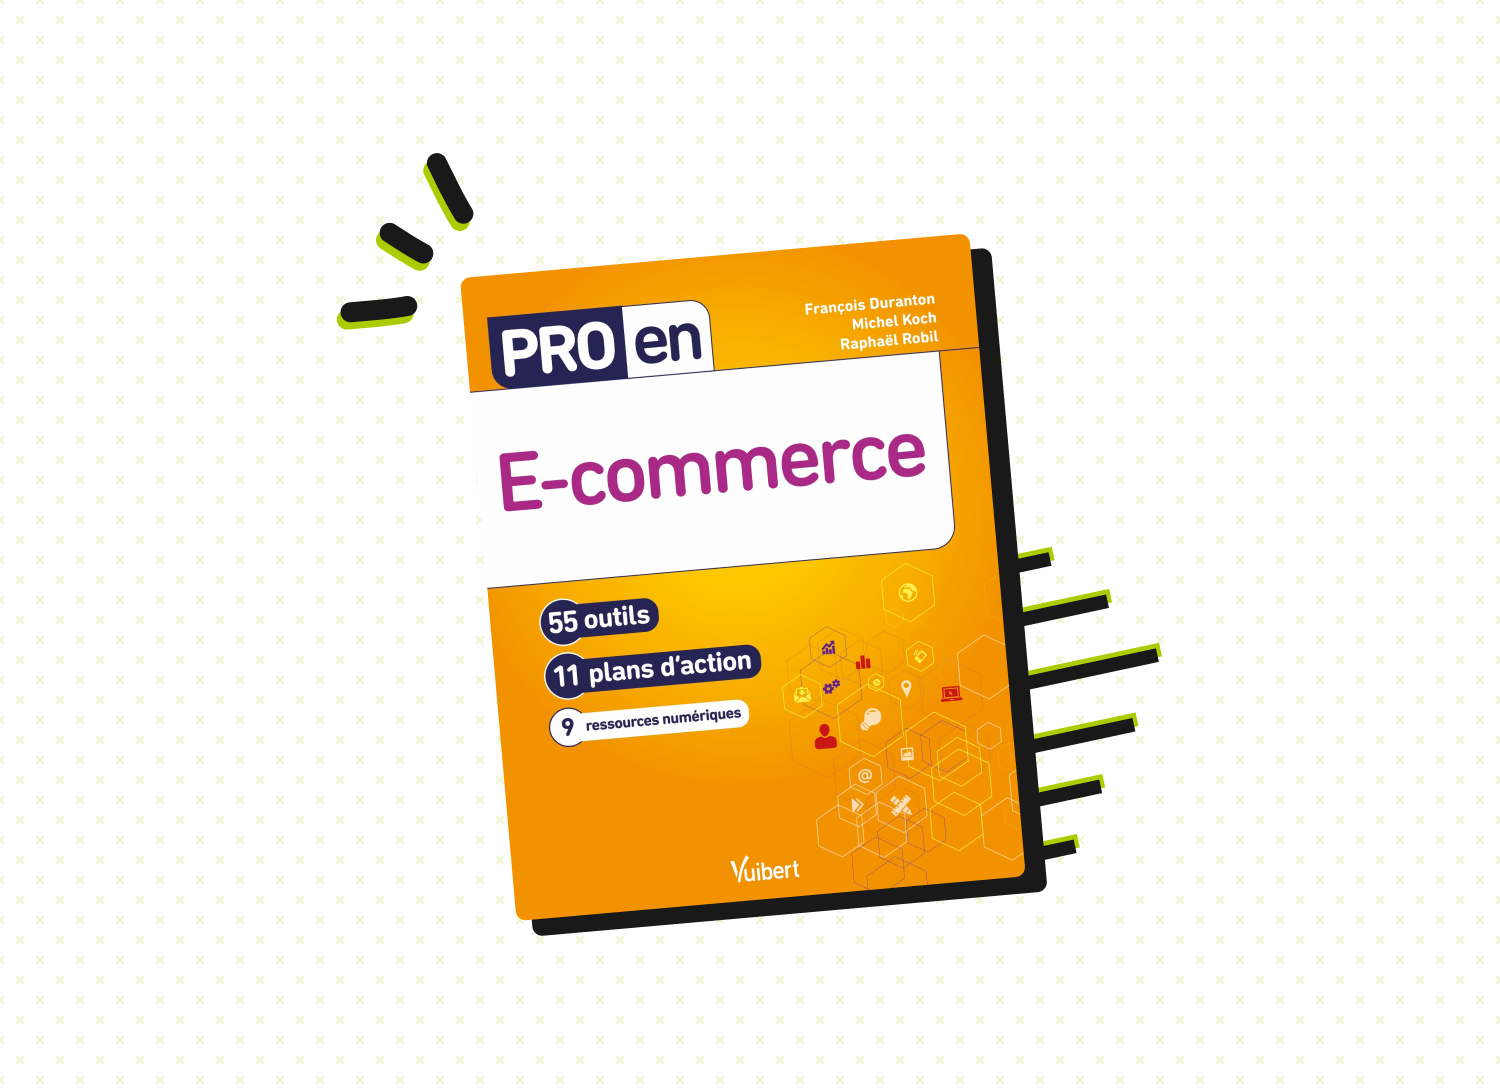 Découvrez le livre Pro en E-commerce, co-écrit par Raphaël Robil